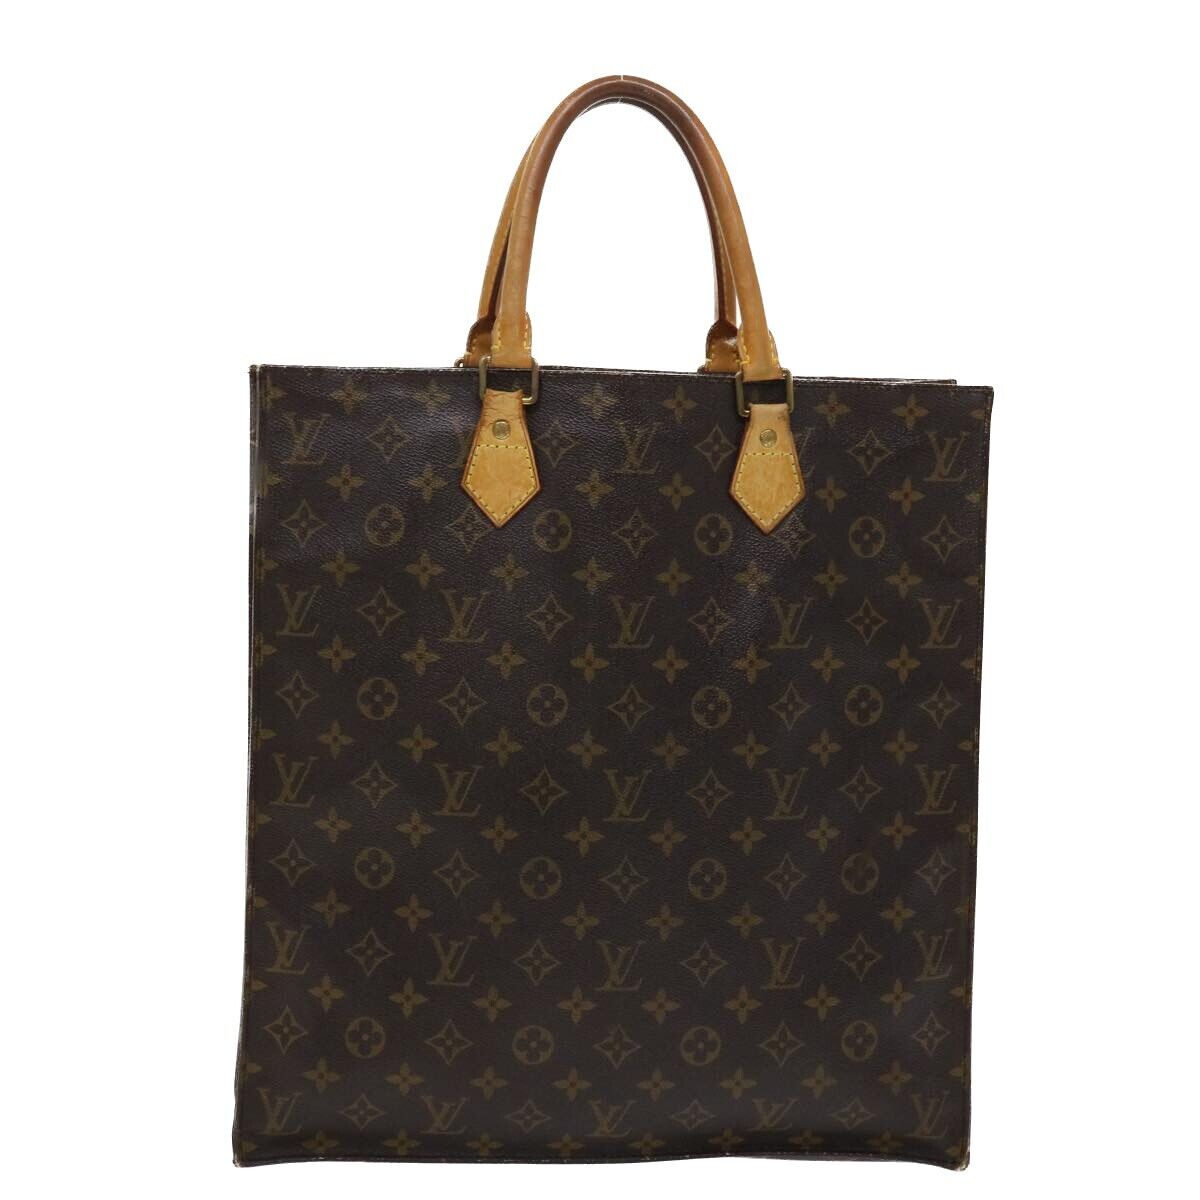 LOUIS VUITTON Graceful PM Womens shoulder bag M43700 pivoine Cloth